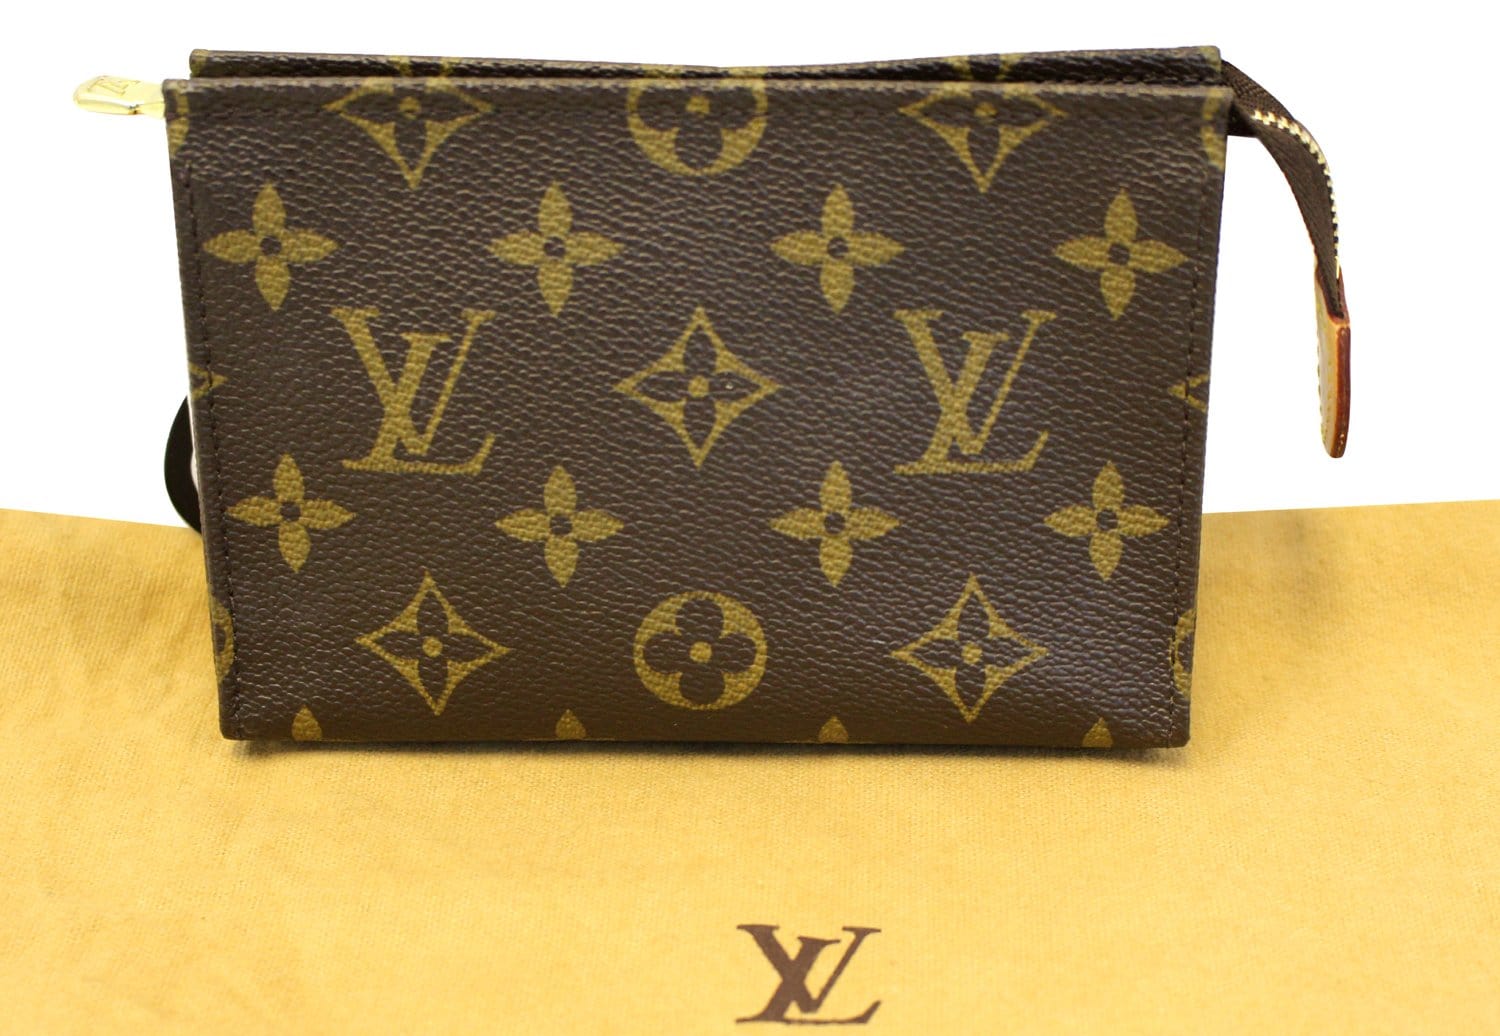 Authenticated used Louis Vuitton Monogram Pochette Toilette 15 M47546 Clutch Bag Ladies, Adult Unisex, Size: (HxWxD): 10cm x 17cm x 2cm / 3.93'' x